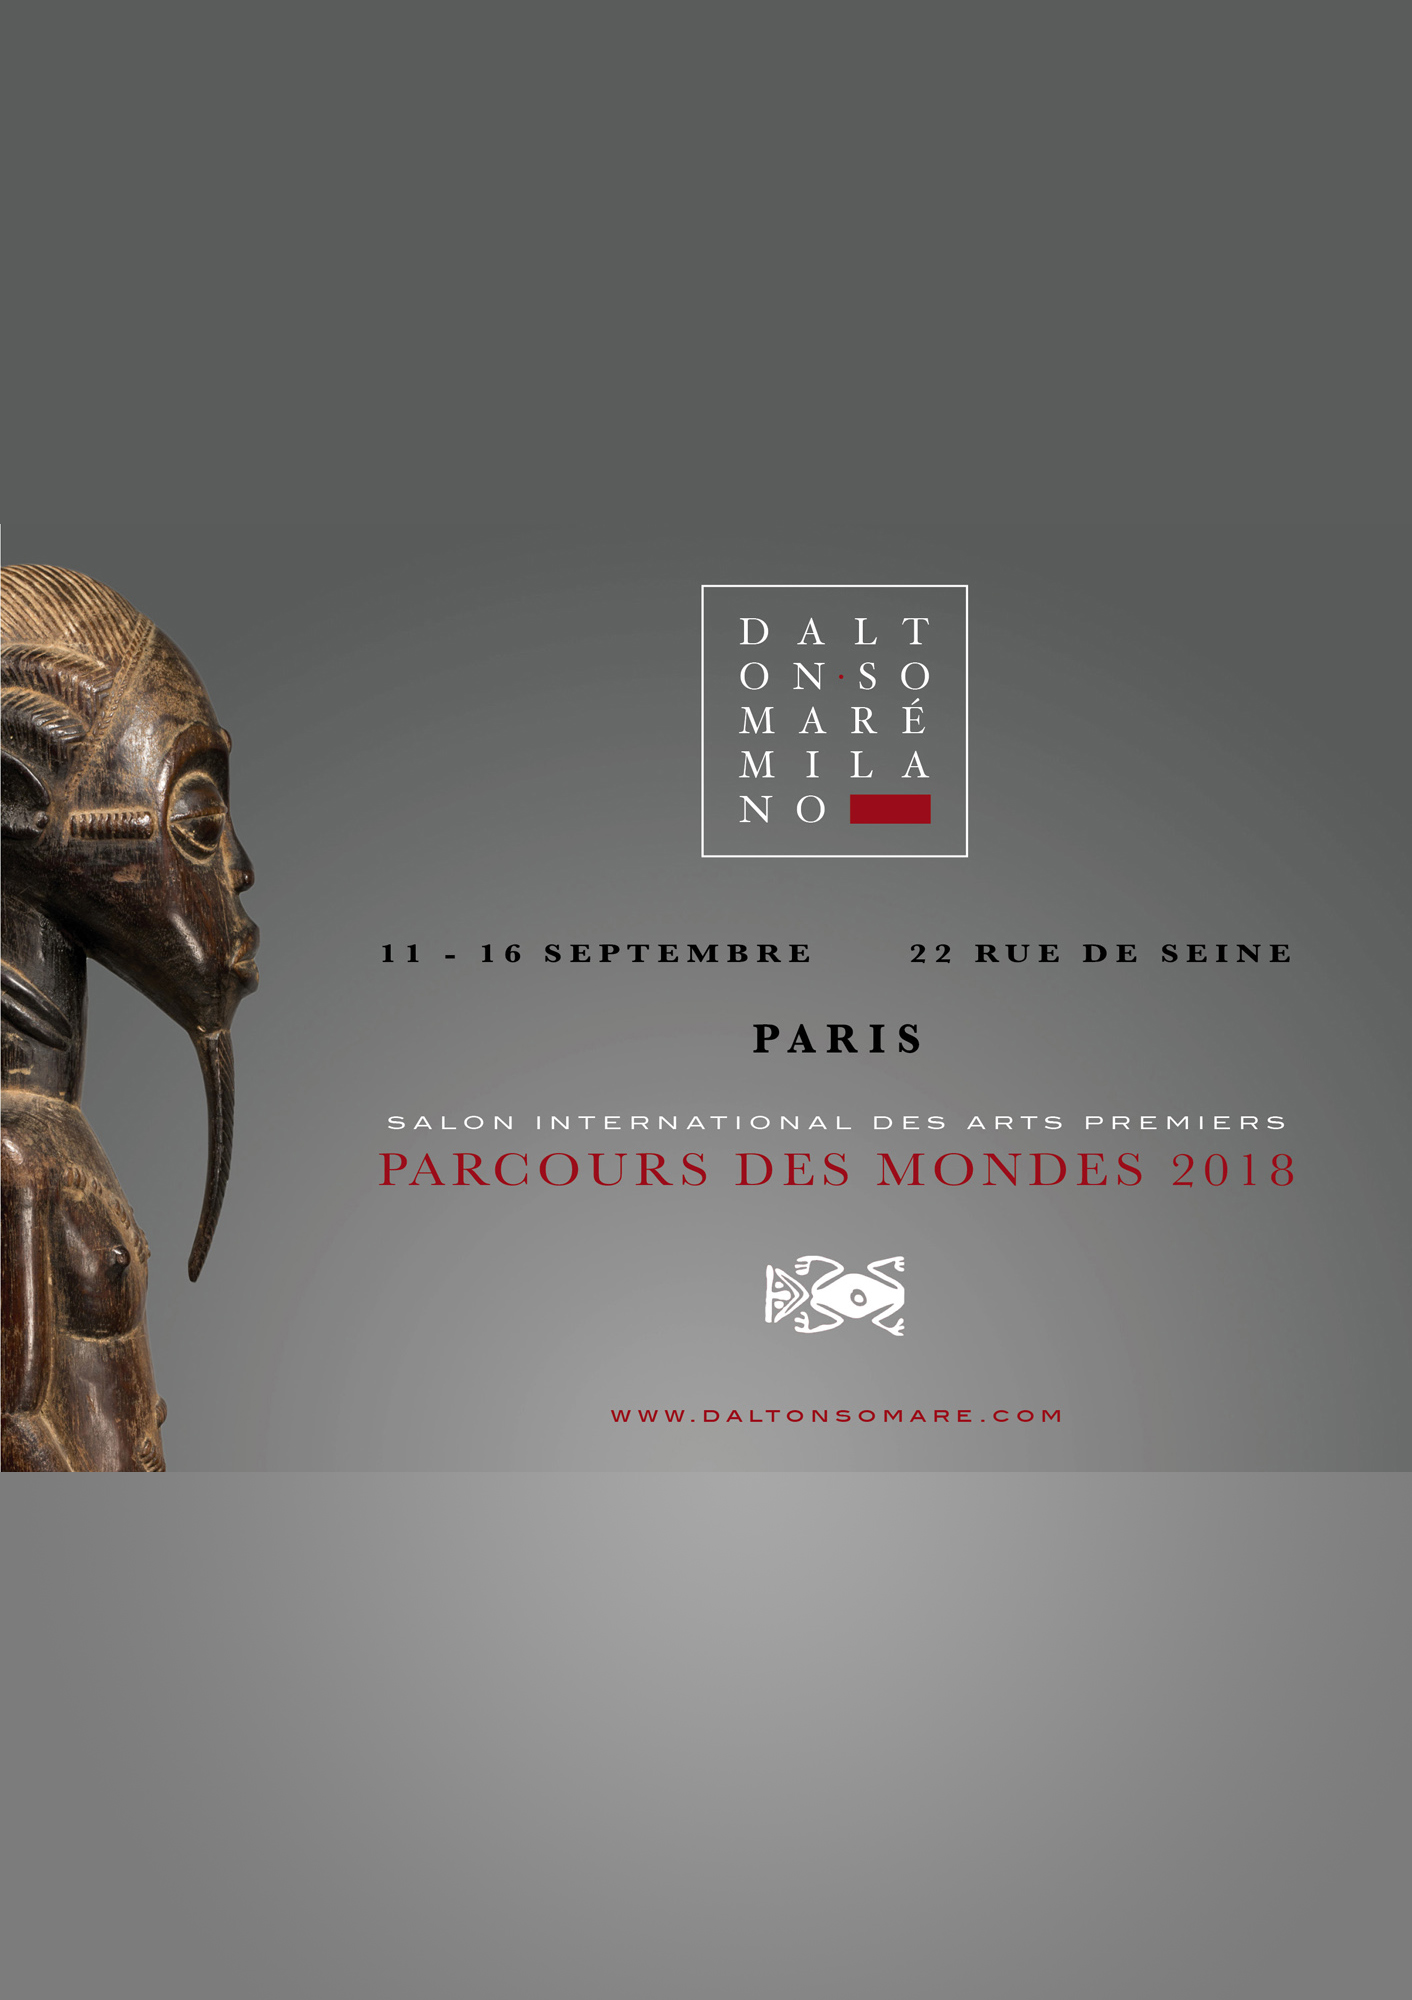 Invito Parcours des Mondes 2018 - Dalton Somare - Arte primitiva Africana e Arte Classica Orientale - Statue in Legno e pietra